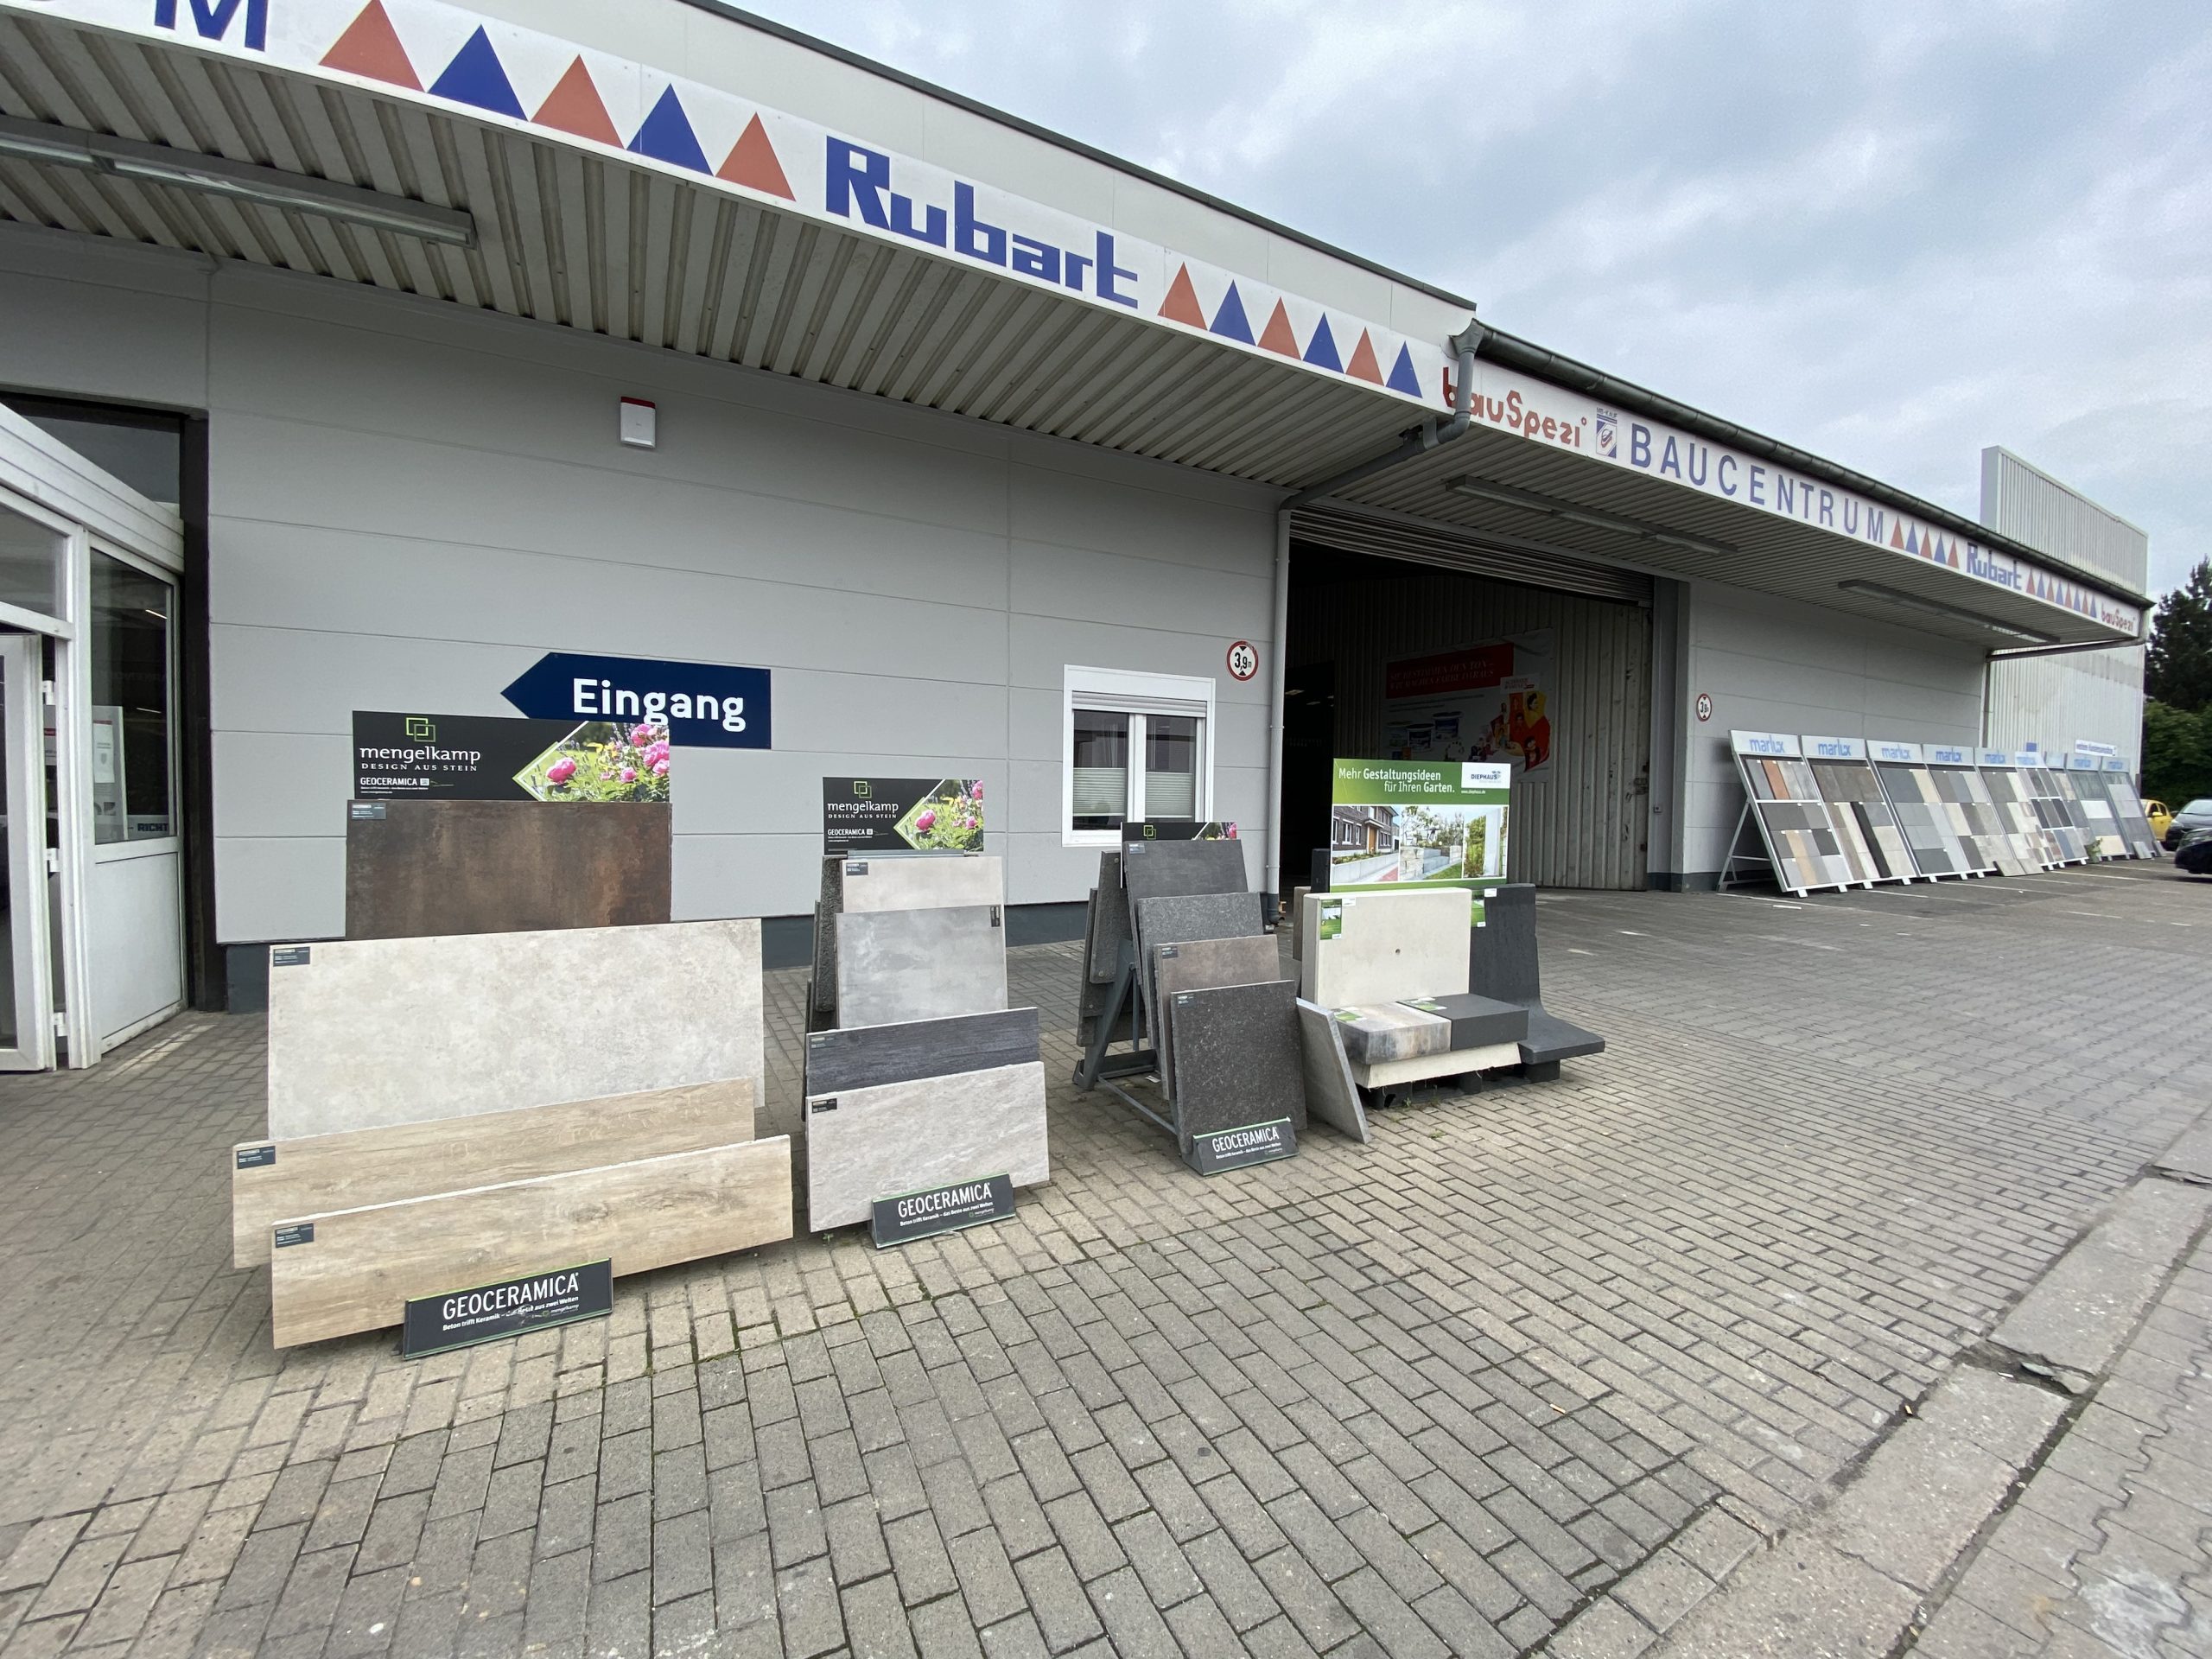 Baucentrum Rubart GmbH & Co. KG, Erfurter Str. 22 - 24, in Dortmund